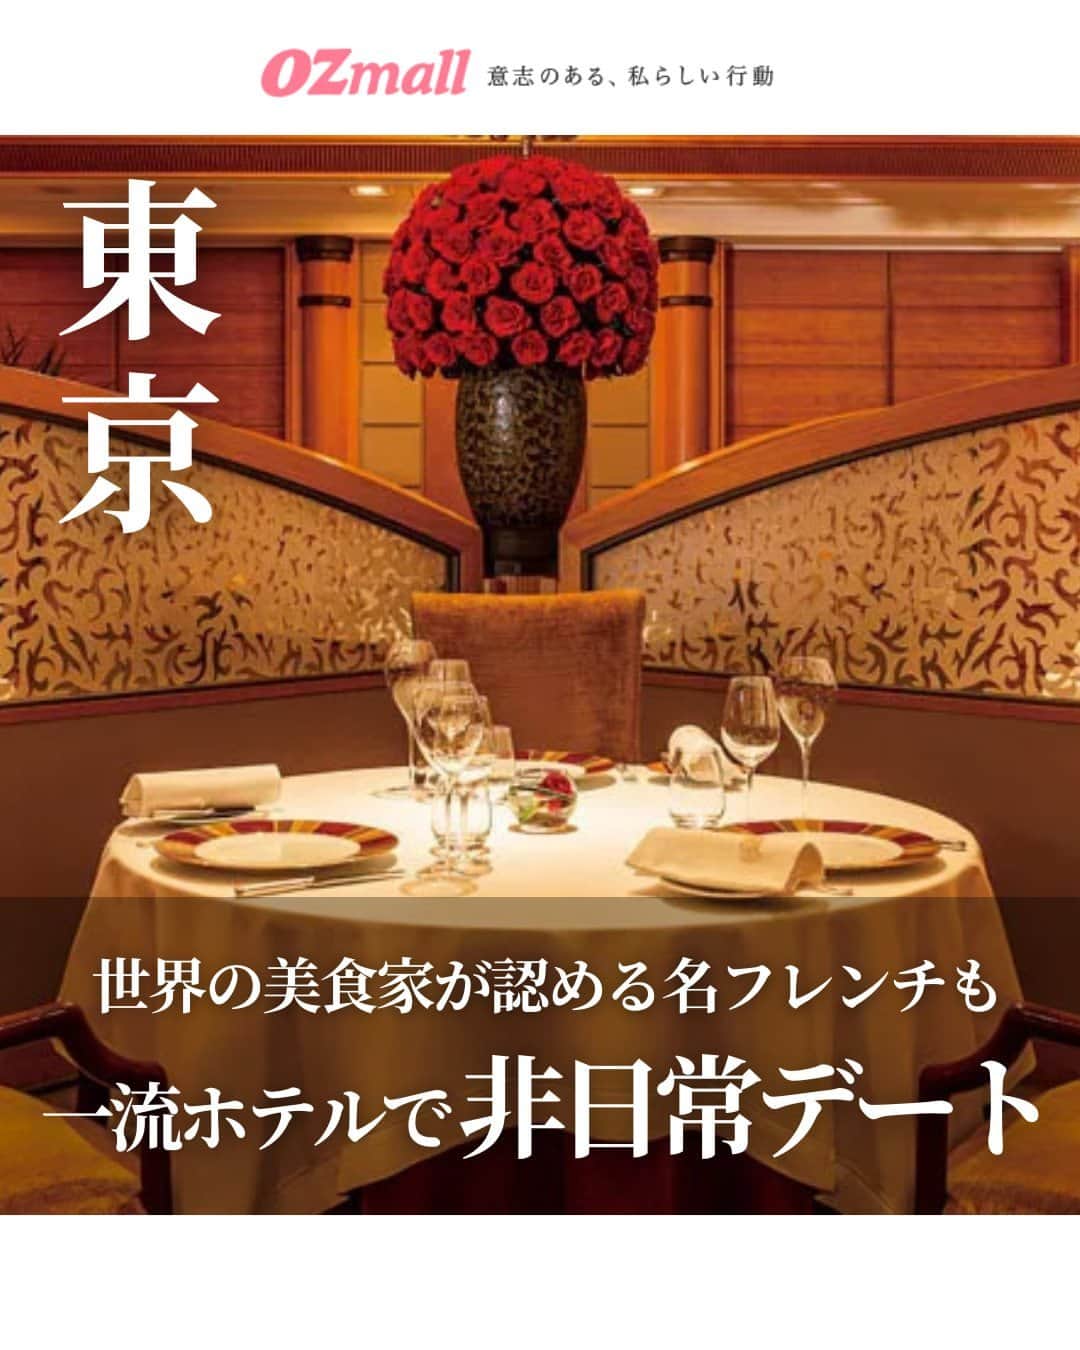 オズモール編集部のインスタグラム：「. 【気になる人は「帝国ホテル」とコメントして詳細をDMでGETしよう✨】 帝国ホテル 東京で楽しむクリスマスを編集部が提案。2023年、2代目本館（通称「ライト館」）の開業から100周年を迎えた節目の年だからこそ、特別なクリスマスを過ごすのにおすすめ💁🎄 . ✅POINT ・深紅のバラを使ったドーム型のロビー装花がお出迎え ・クリスマス限定ディナーのルームサービス ・宿泊しなくても楽しめる、クリスマスアフタヌーンティー ・フランス料理「レ セゾン」のクリスマスディナー ・クリスマスビュッフェで、好きなものを好きなだけ！ ・ホテルメイドの上品なクリスマスケーキをテイクアウト ・美しい歌声に酔いしれる、クリスマスロビーコンサート ----------- 帝国ホテル 東京 📍東京都千代田区内幸町1-1-1 🚃JR有楽町駅日比谷口より徒歩約5分、東京メトロ日比谷駅A13出口より徒歩約3分 ----------- . 「帝国ホテル」とこの投稿にコメントしたら、帝国ホテル 東京でのクリスマスの楽しみ方がわかる記事のリンクがDMで届きます✨ . 写真提供／帝国ホテル 東京 . #ホテル #おしゃれホテル #クリスマス #帝国ホテル #東京」